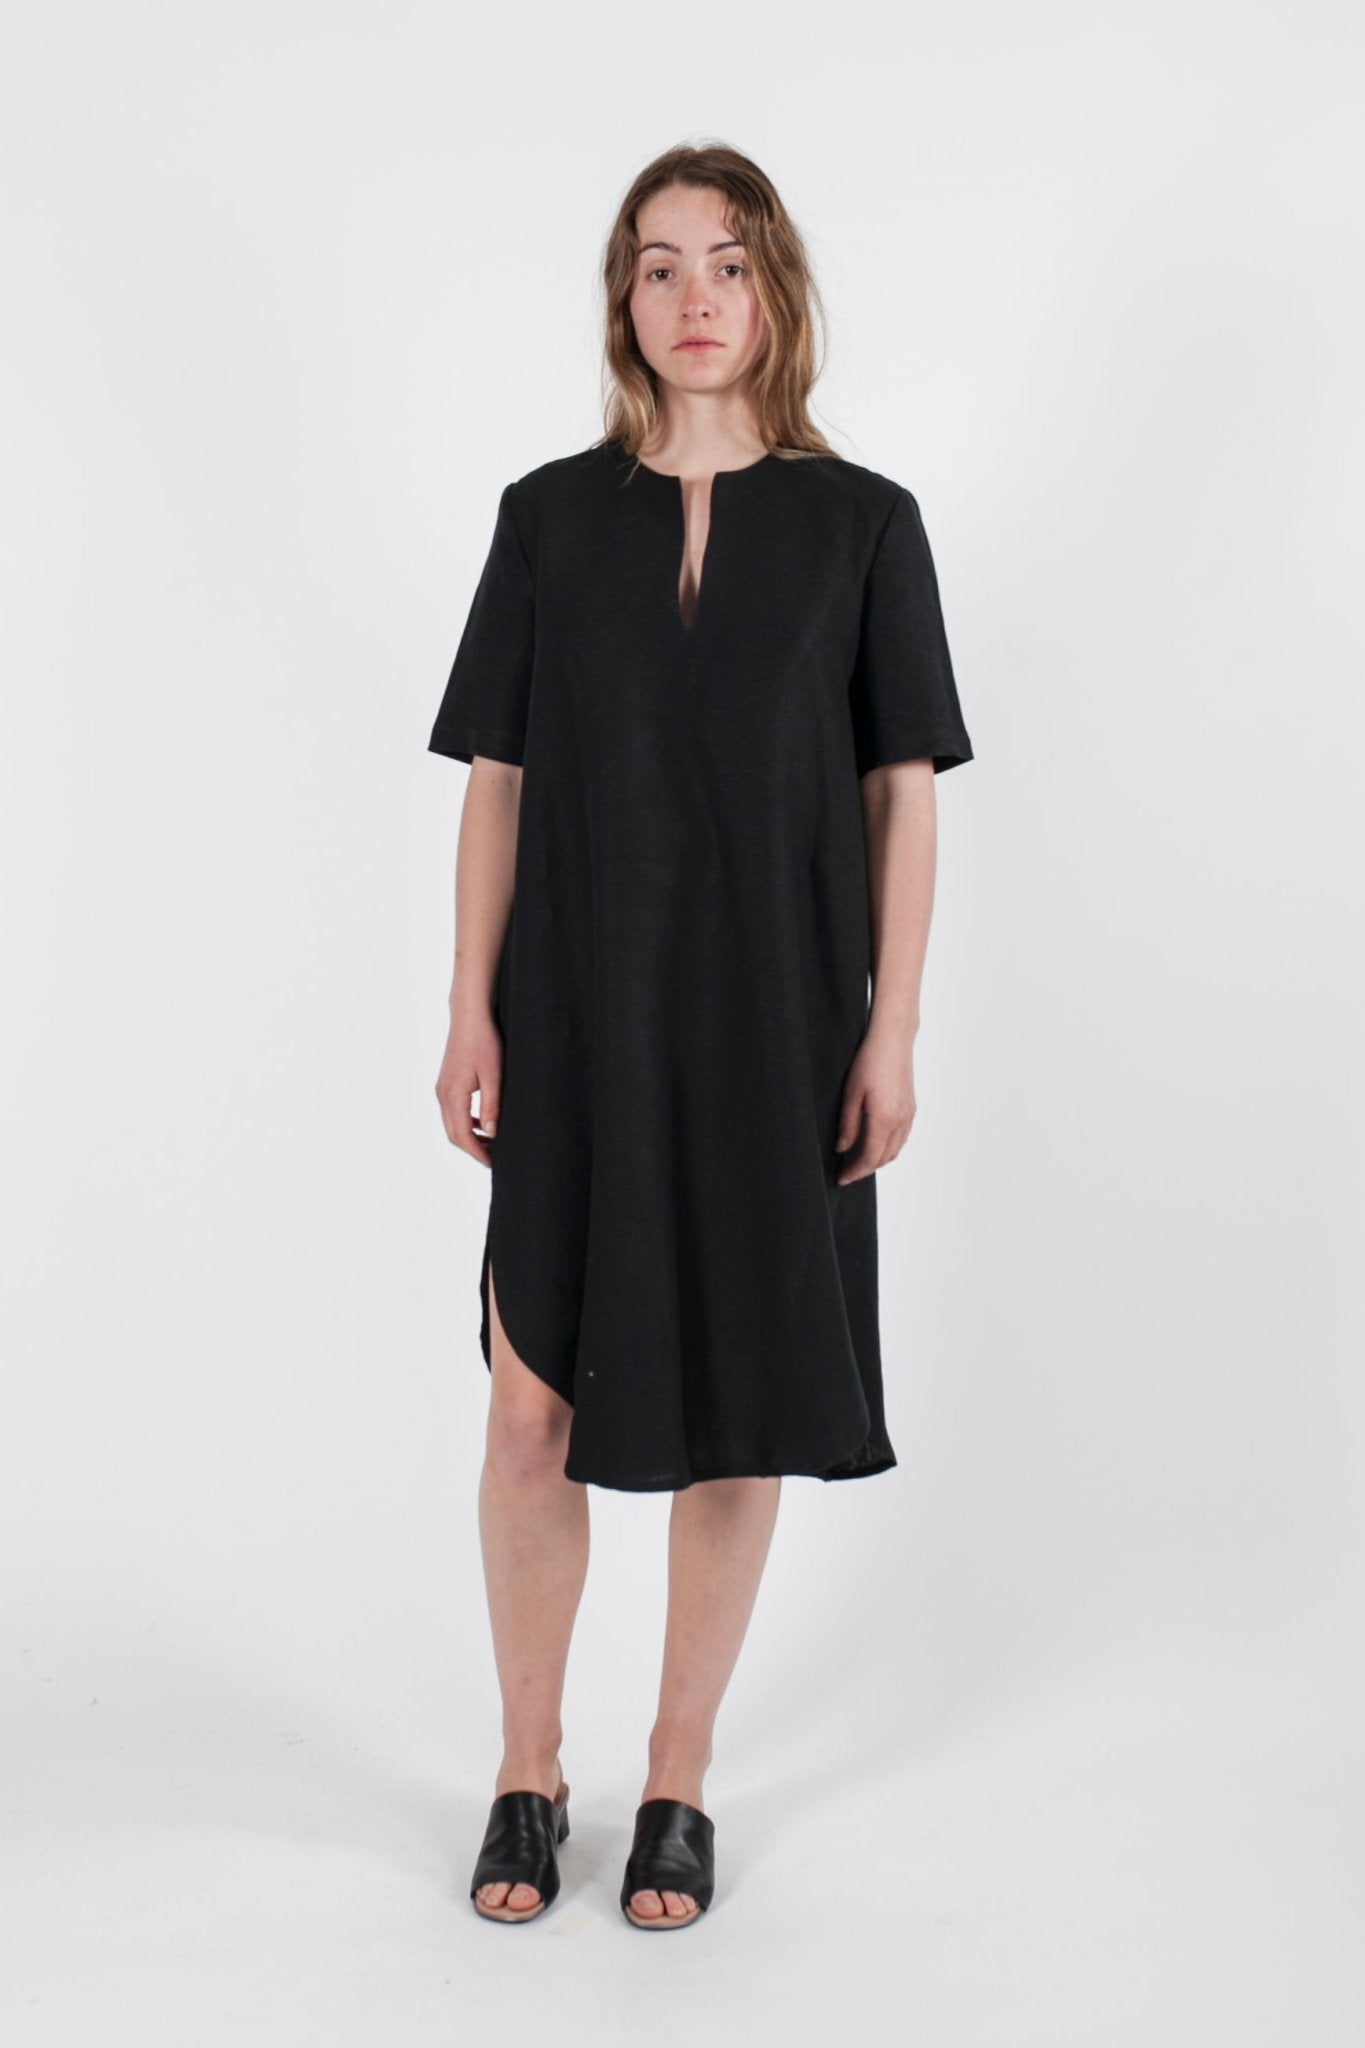 Hemp Linen Short Sleeve Tunic Dress - Ensemble Studios